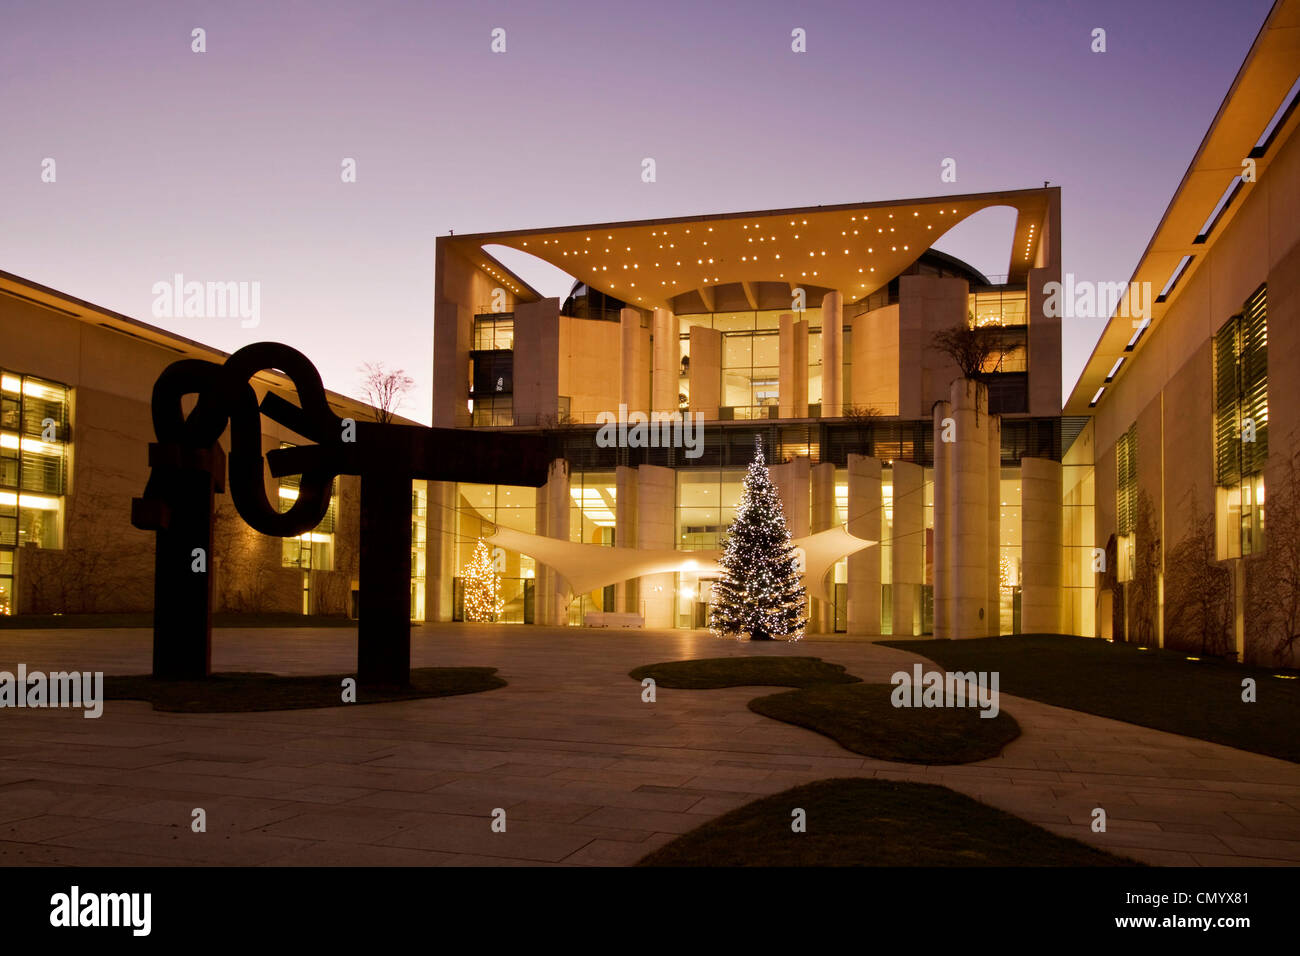 Kanzler-Büro mit Weihnachten Treeat Dämmerung, Architekt Axel Schultes, Skulptur von Eduardo Chillida, Berlin, Deutschland Stockfoto